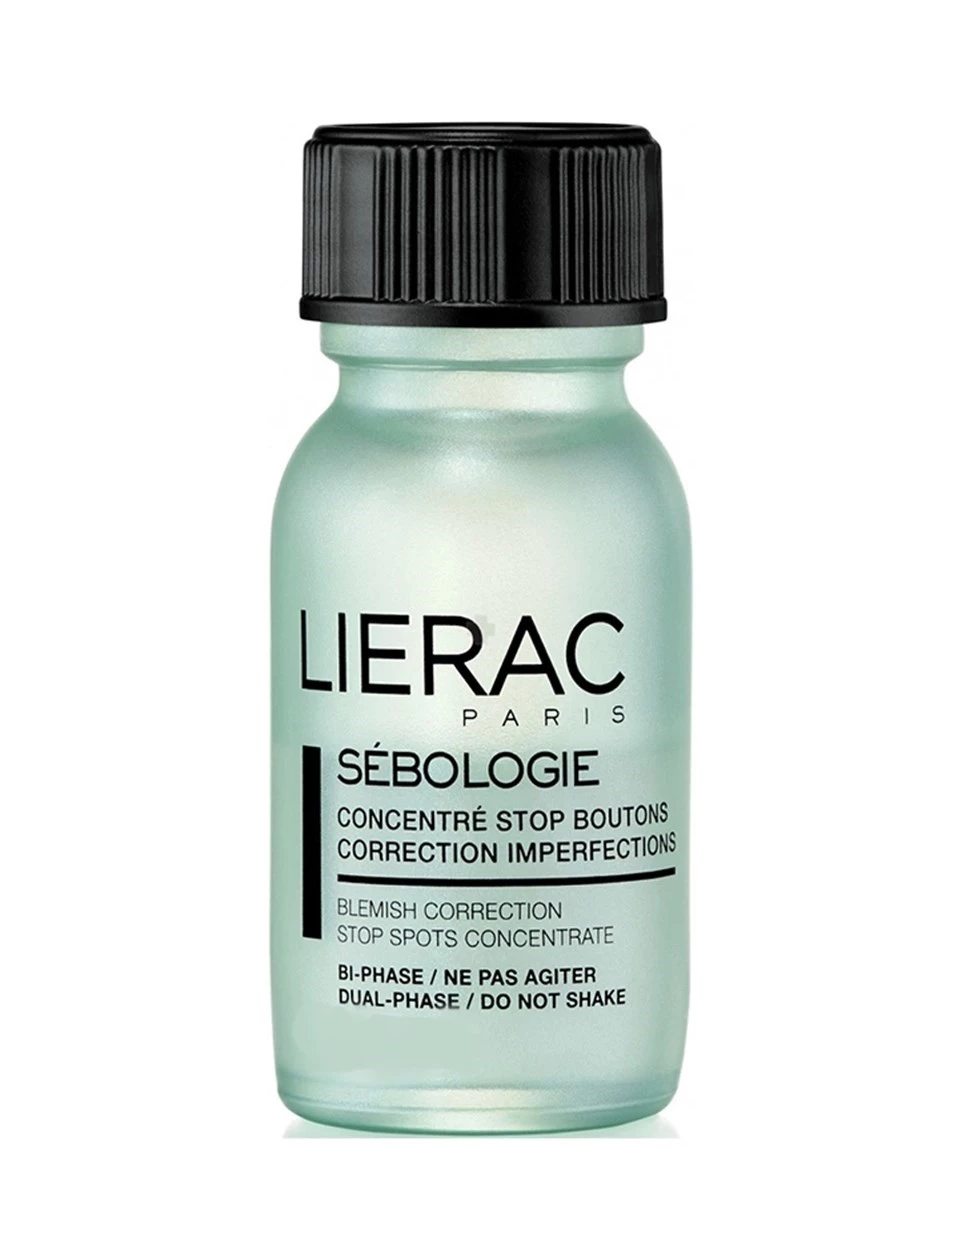 Lierac Sebologie Stop Spots Concentrate Blemish Correction Çift fazlı konsantre sivilceye eğilimli ciltler için bakım ürünü